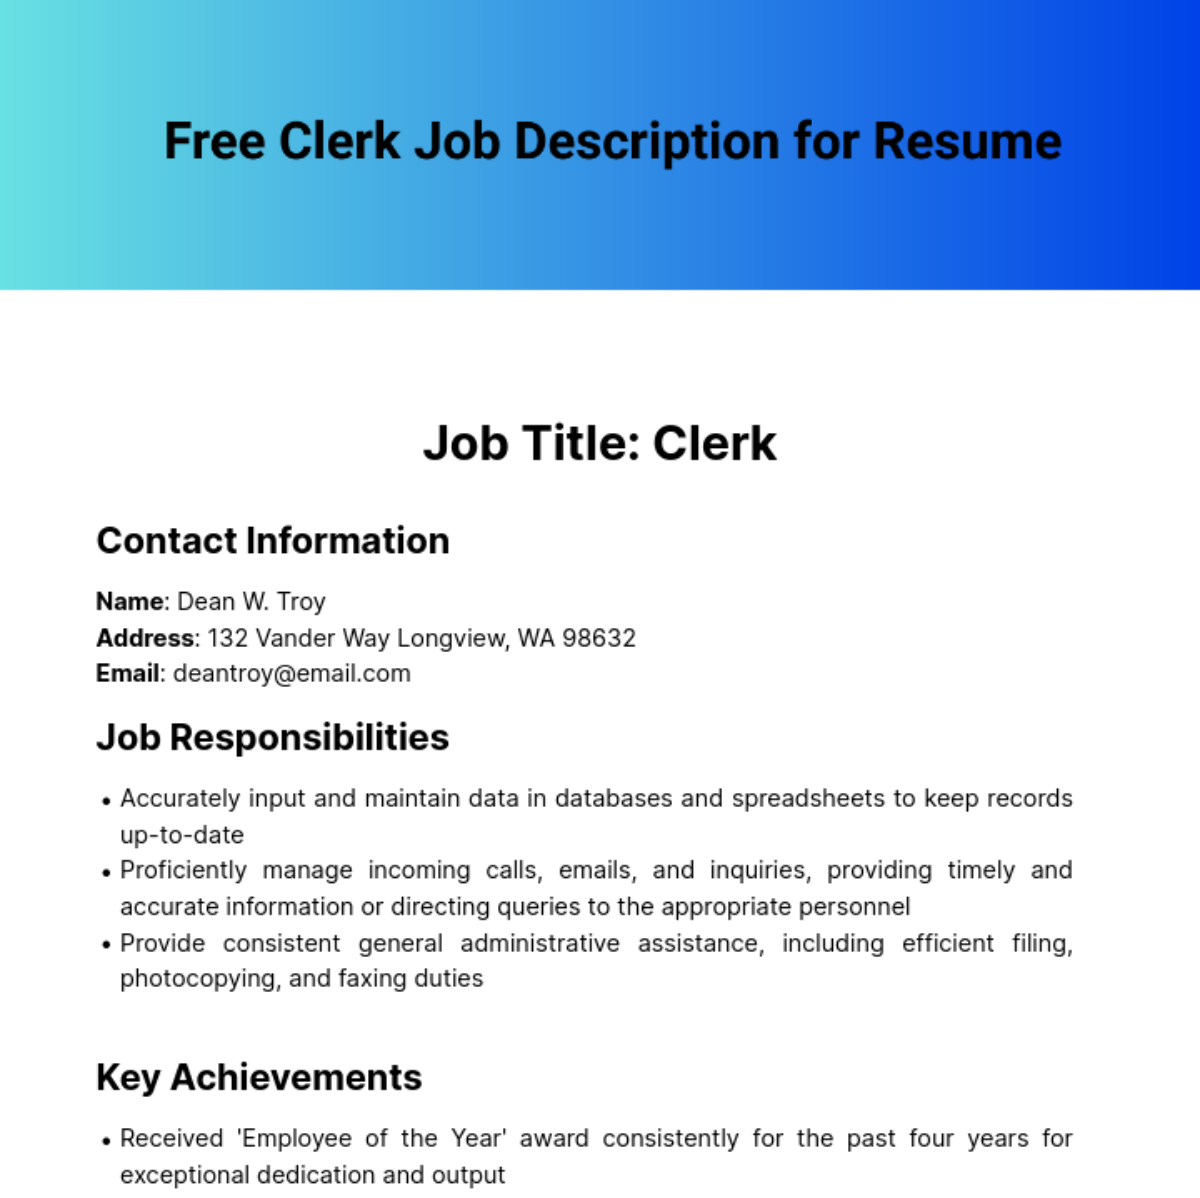 Clerk Job Description for Resume Template